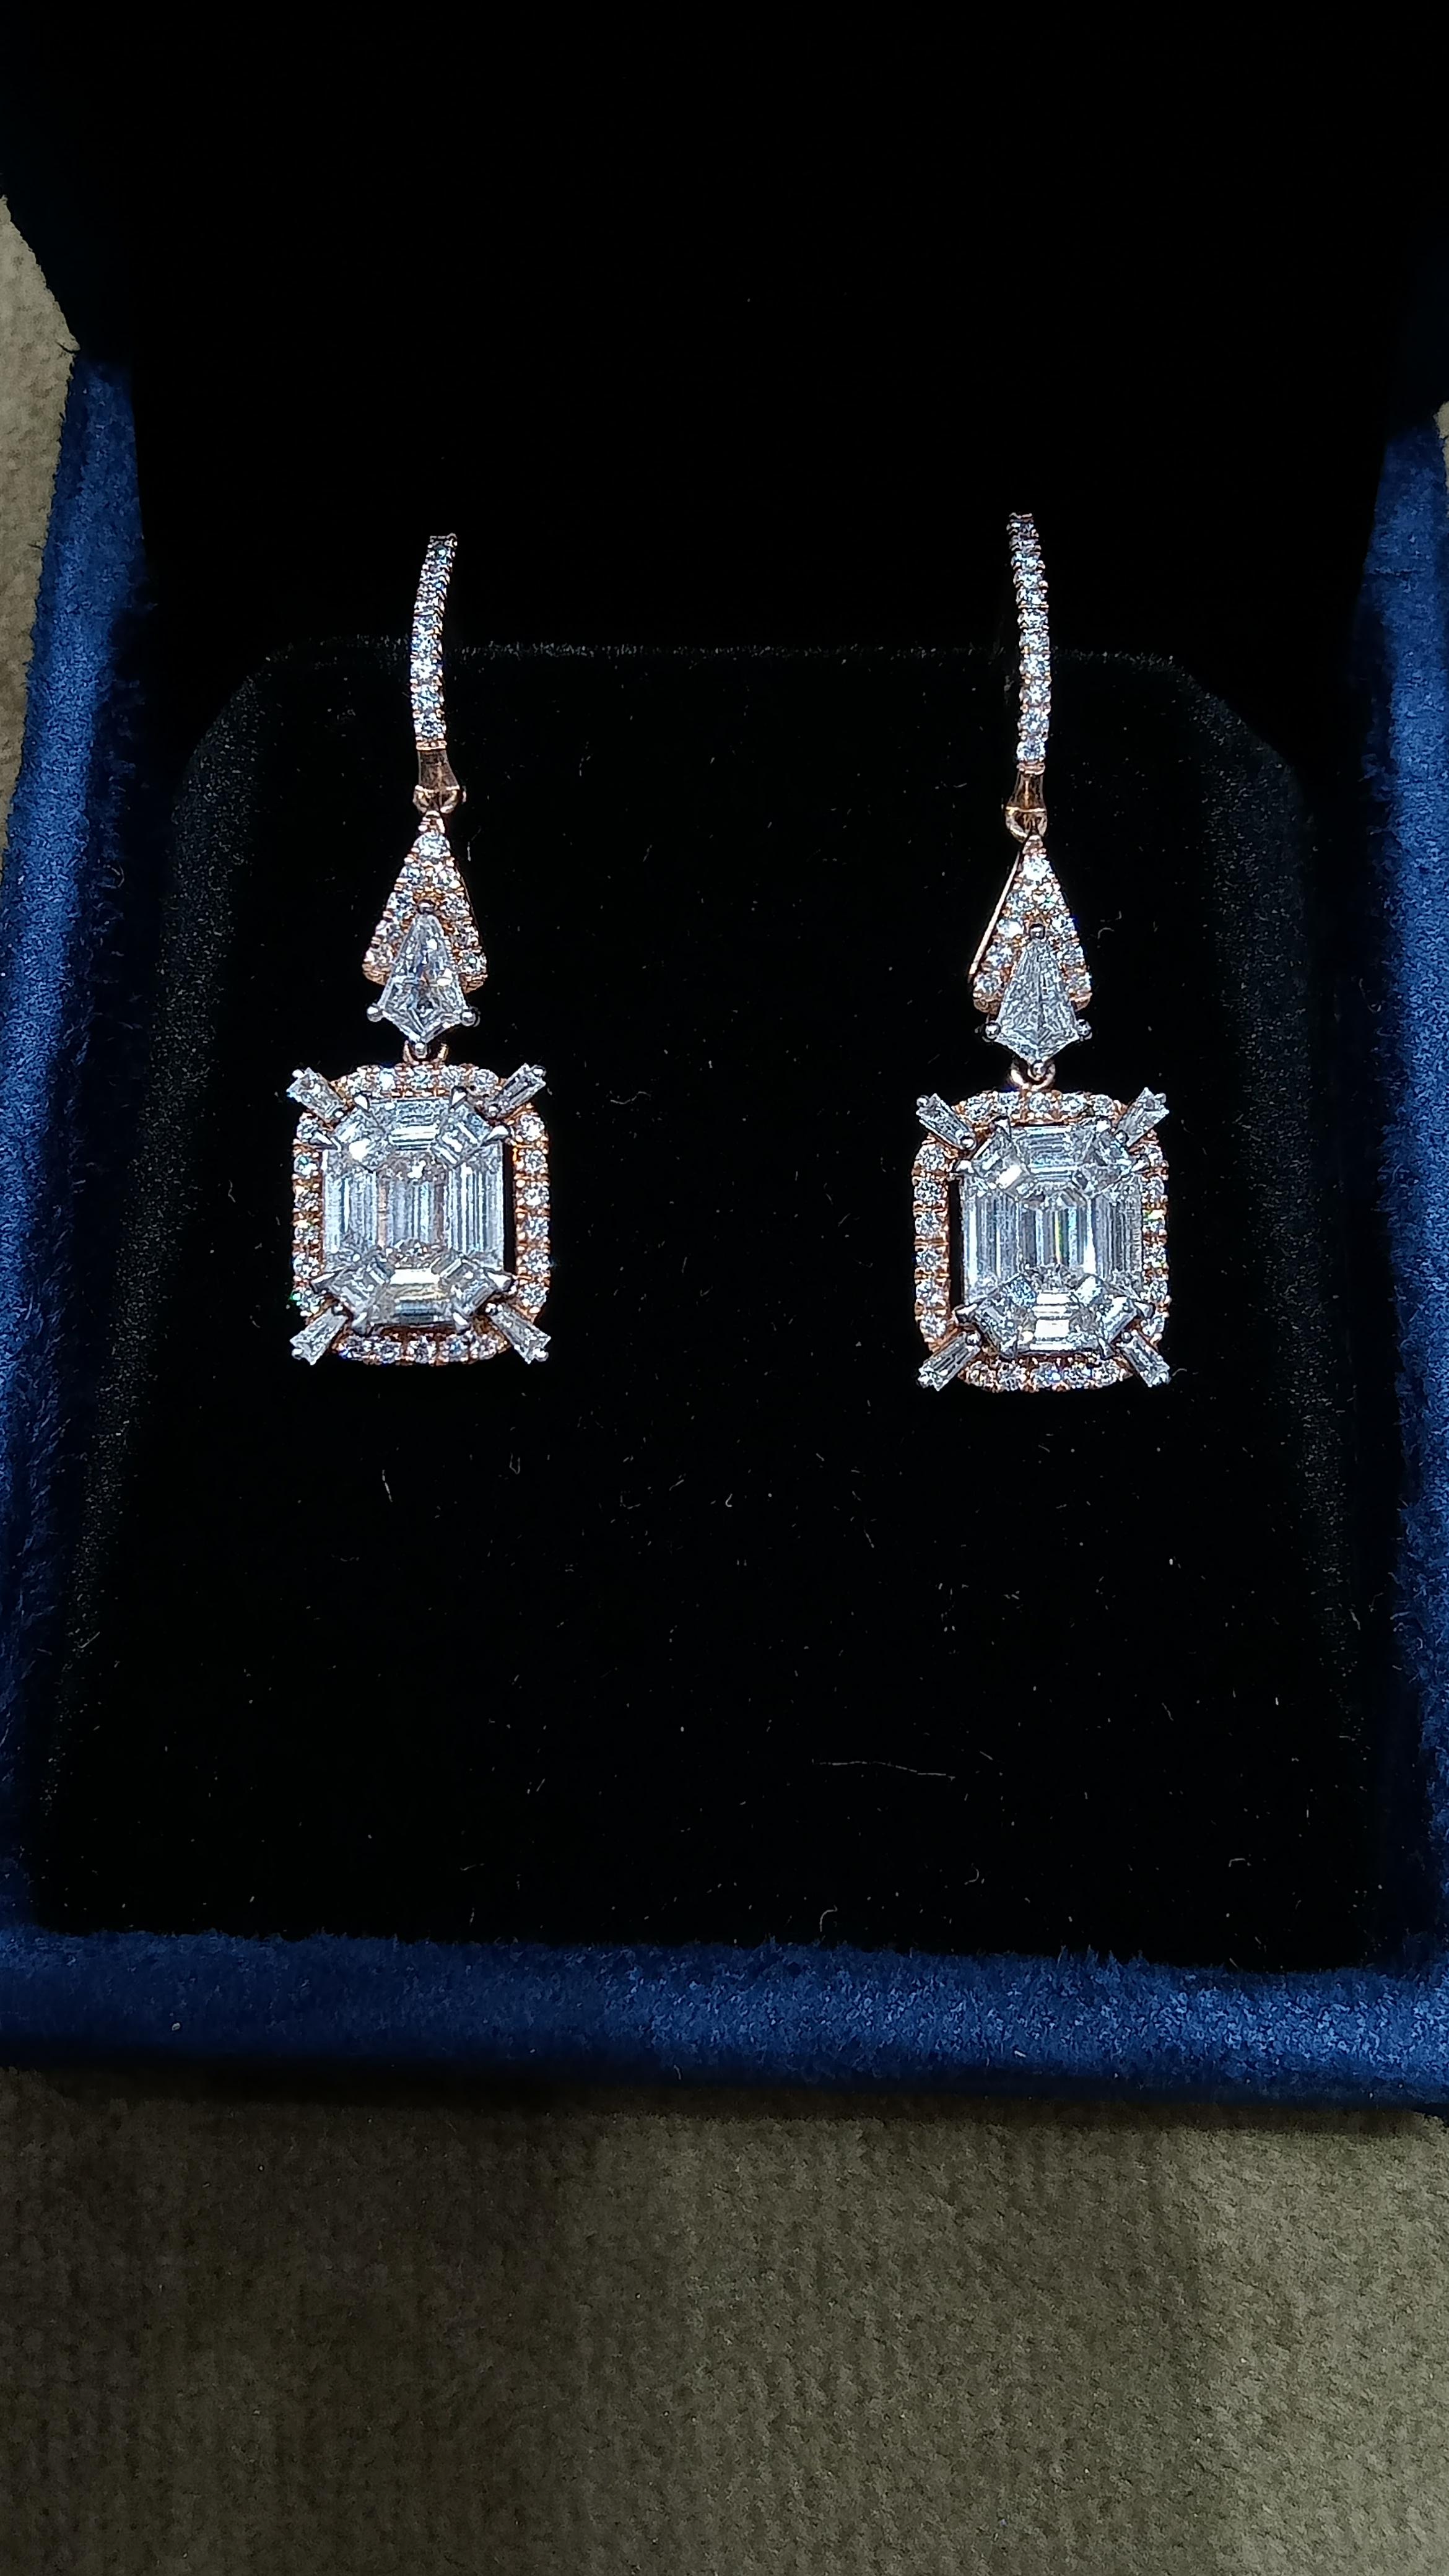 Les bijoux sont un moyen de conserver les souvenirs.

Poids du diamant-2,19 carats
Poids de l'or-5.332 grammes
